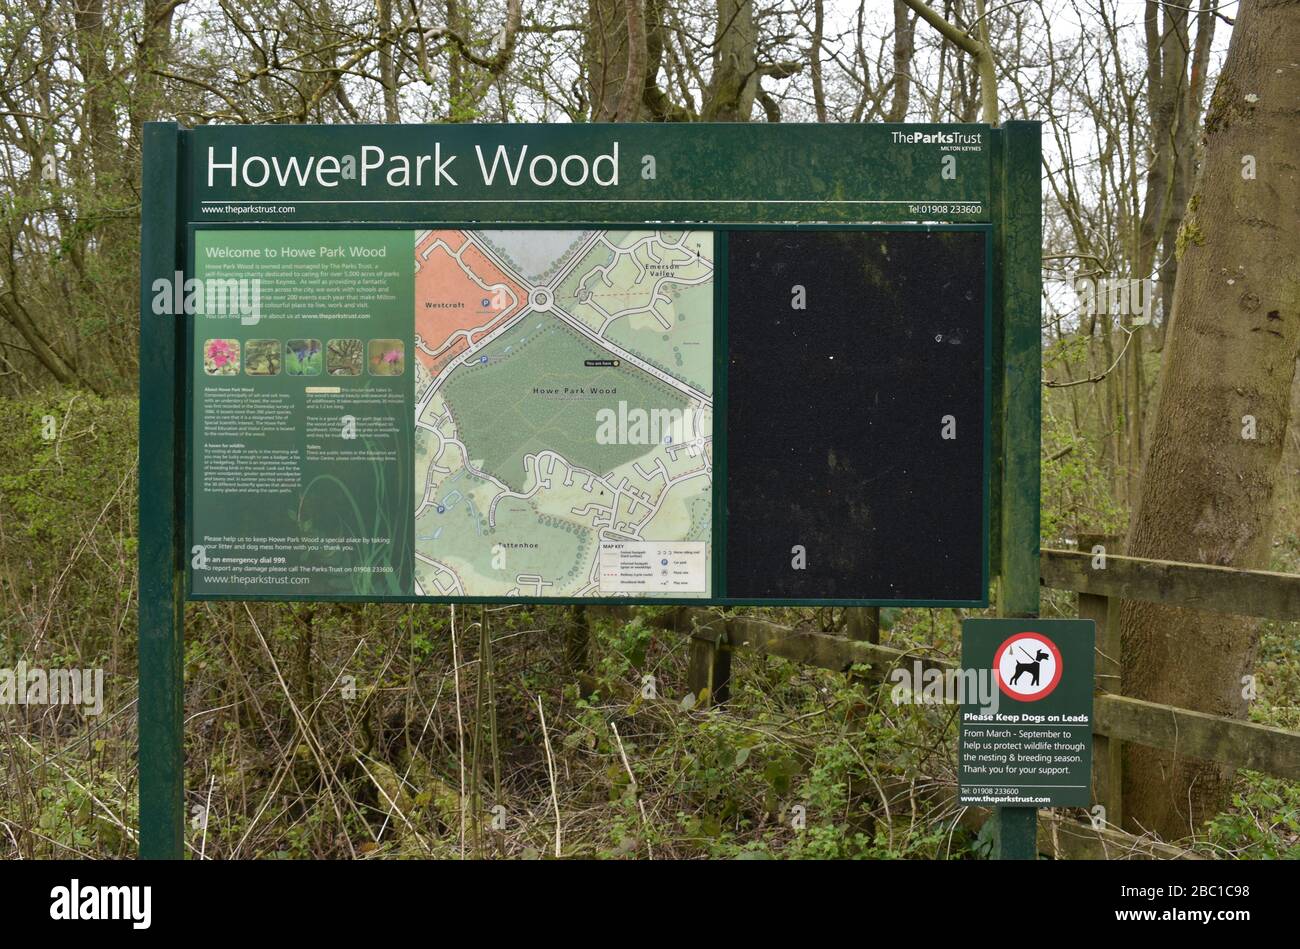 Howe Park Wood noticeboard in Milton Keynes. Stock Photo